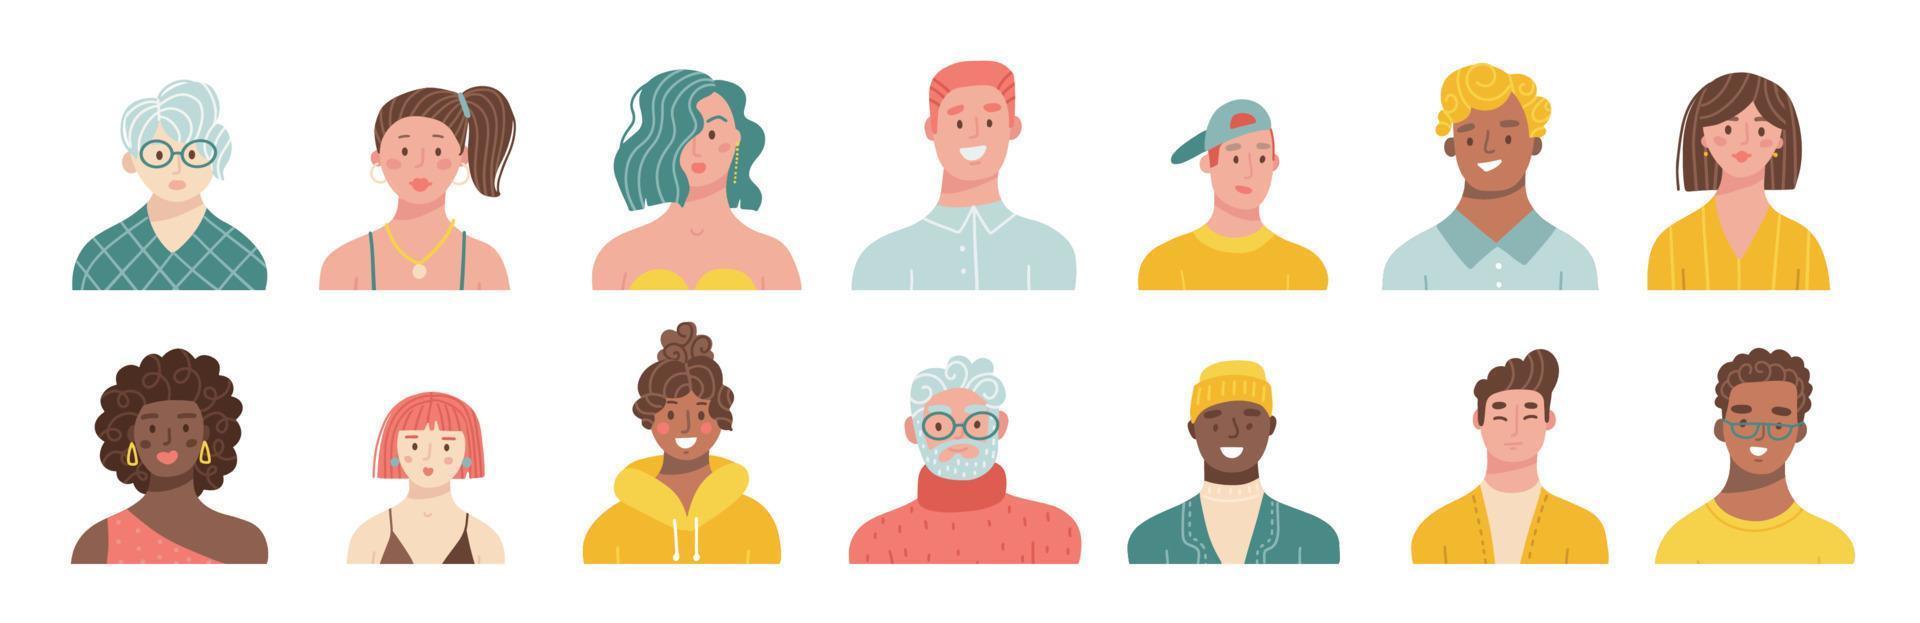 uppsättning av porträtt av människor av annorlunda races och ålder. avatars av män och kvinnor. vektor platt hand dragen illustration.